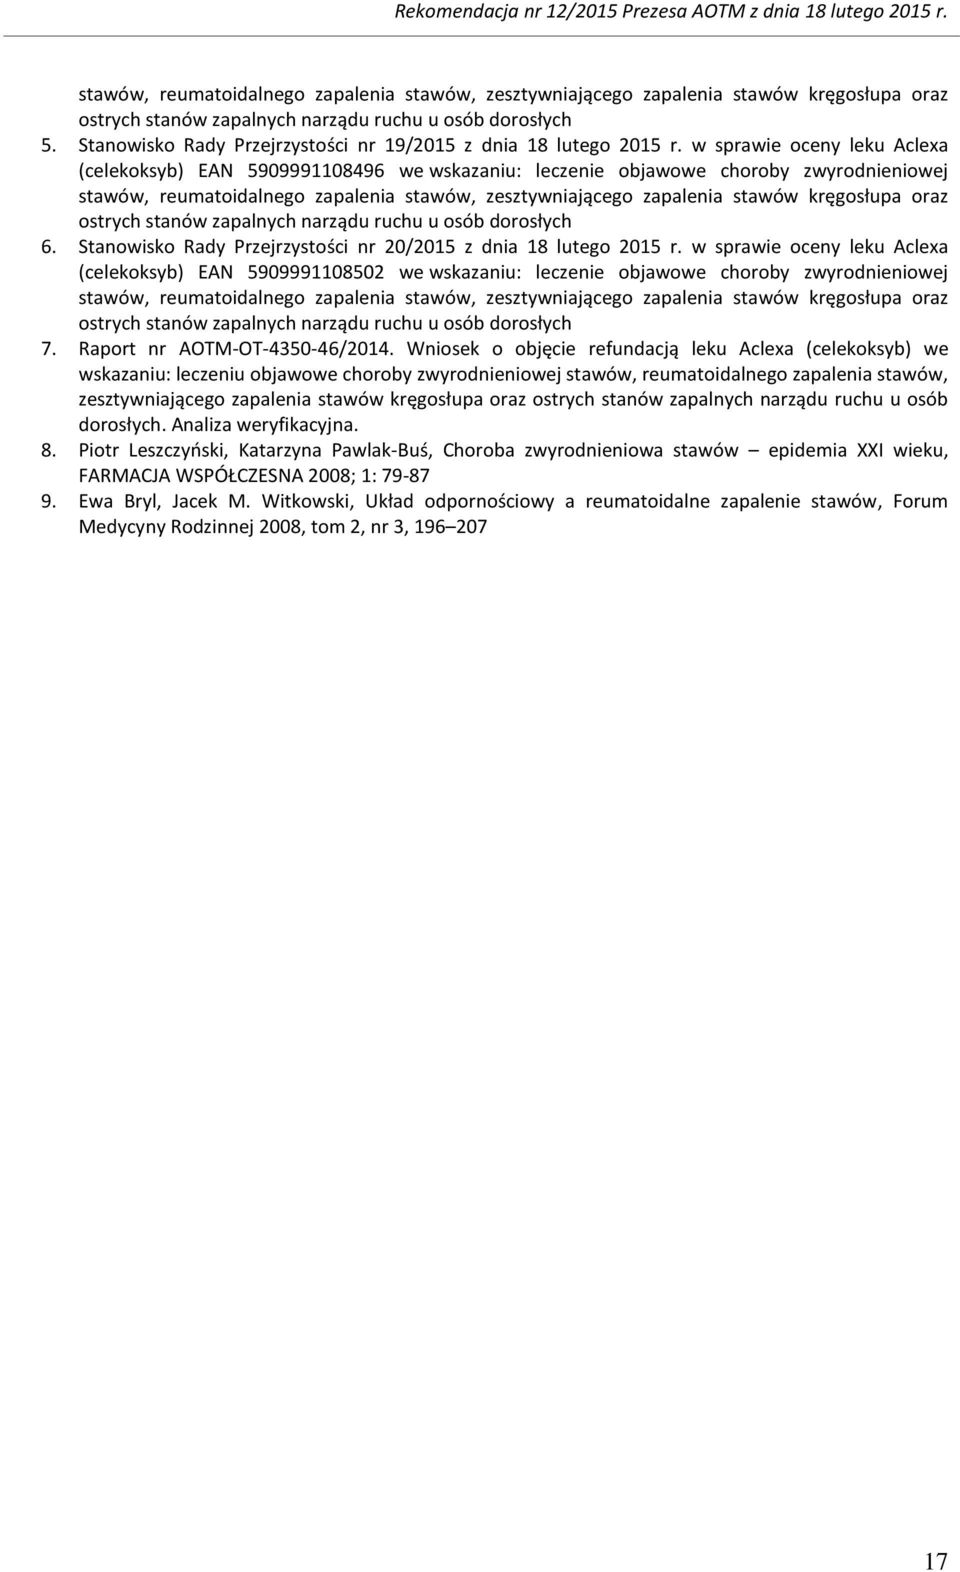 Stanwisk Rady Przejrzystści nr 19/2015 z dnia 18 luteg 2015 r.